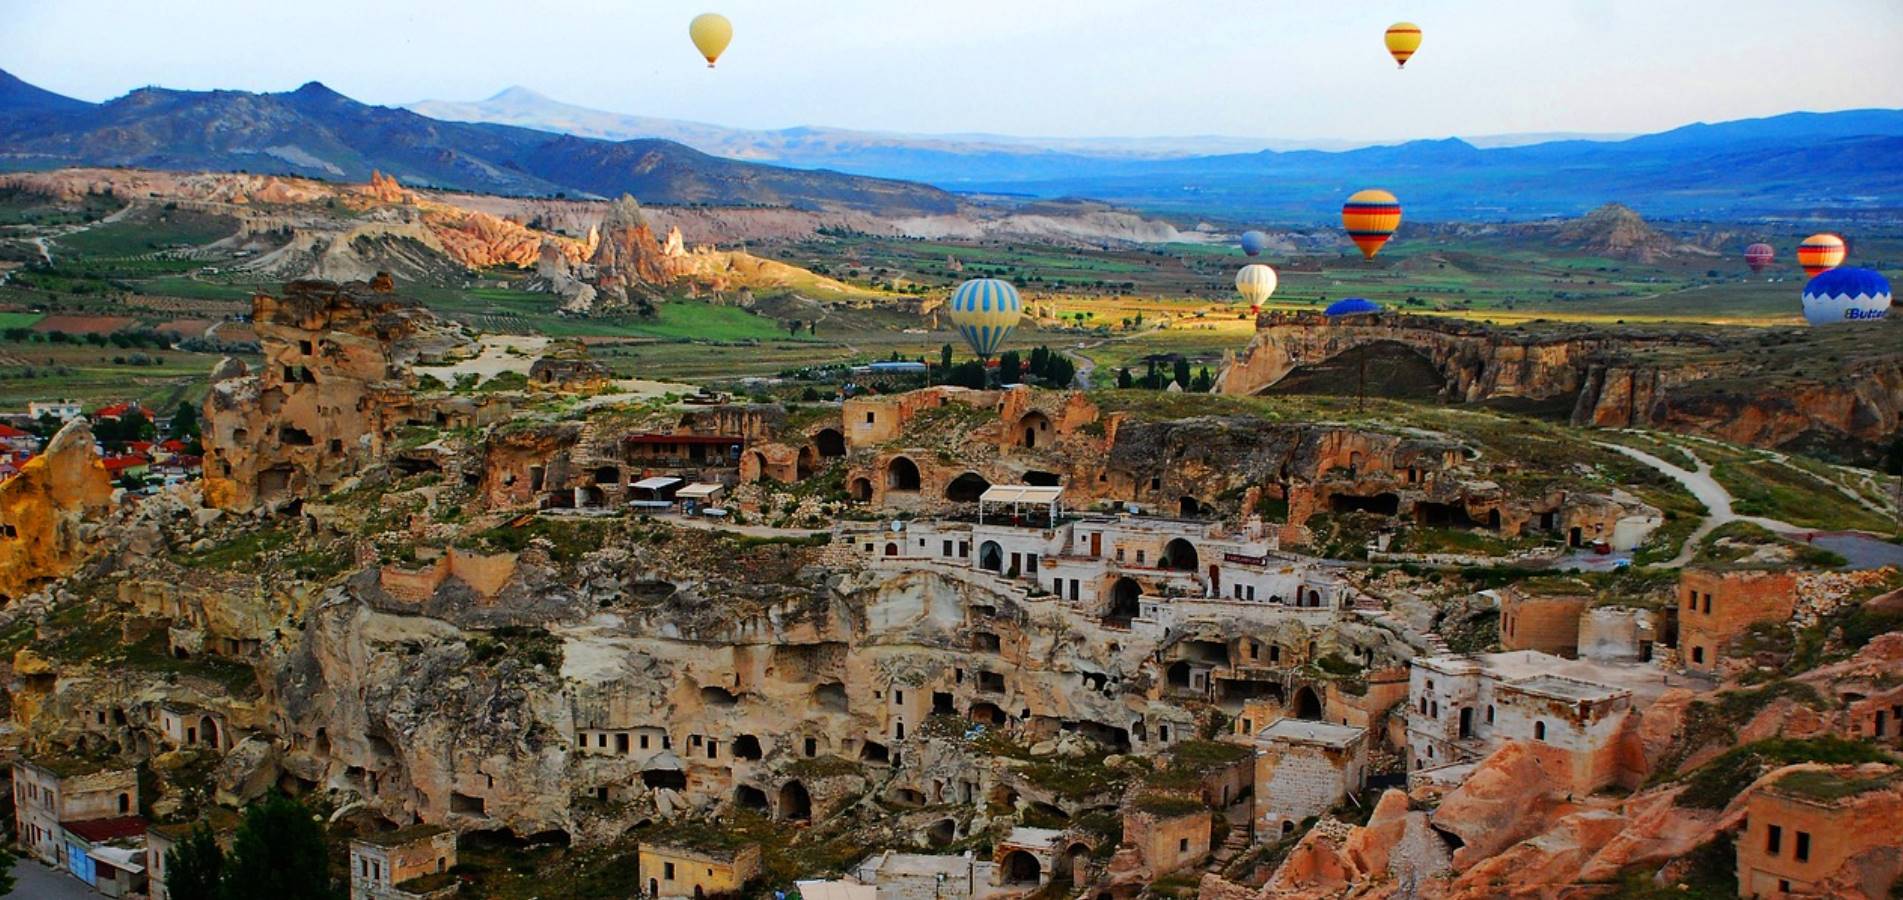 السياحة في تركيا 2021: شركة مقام للسياحة - معالم سياحية